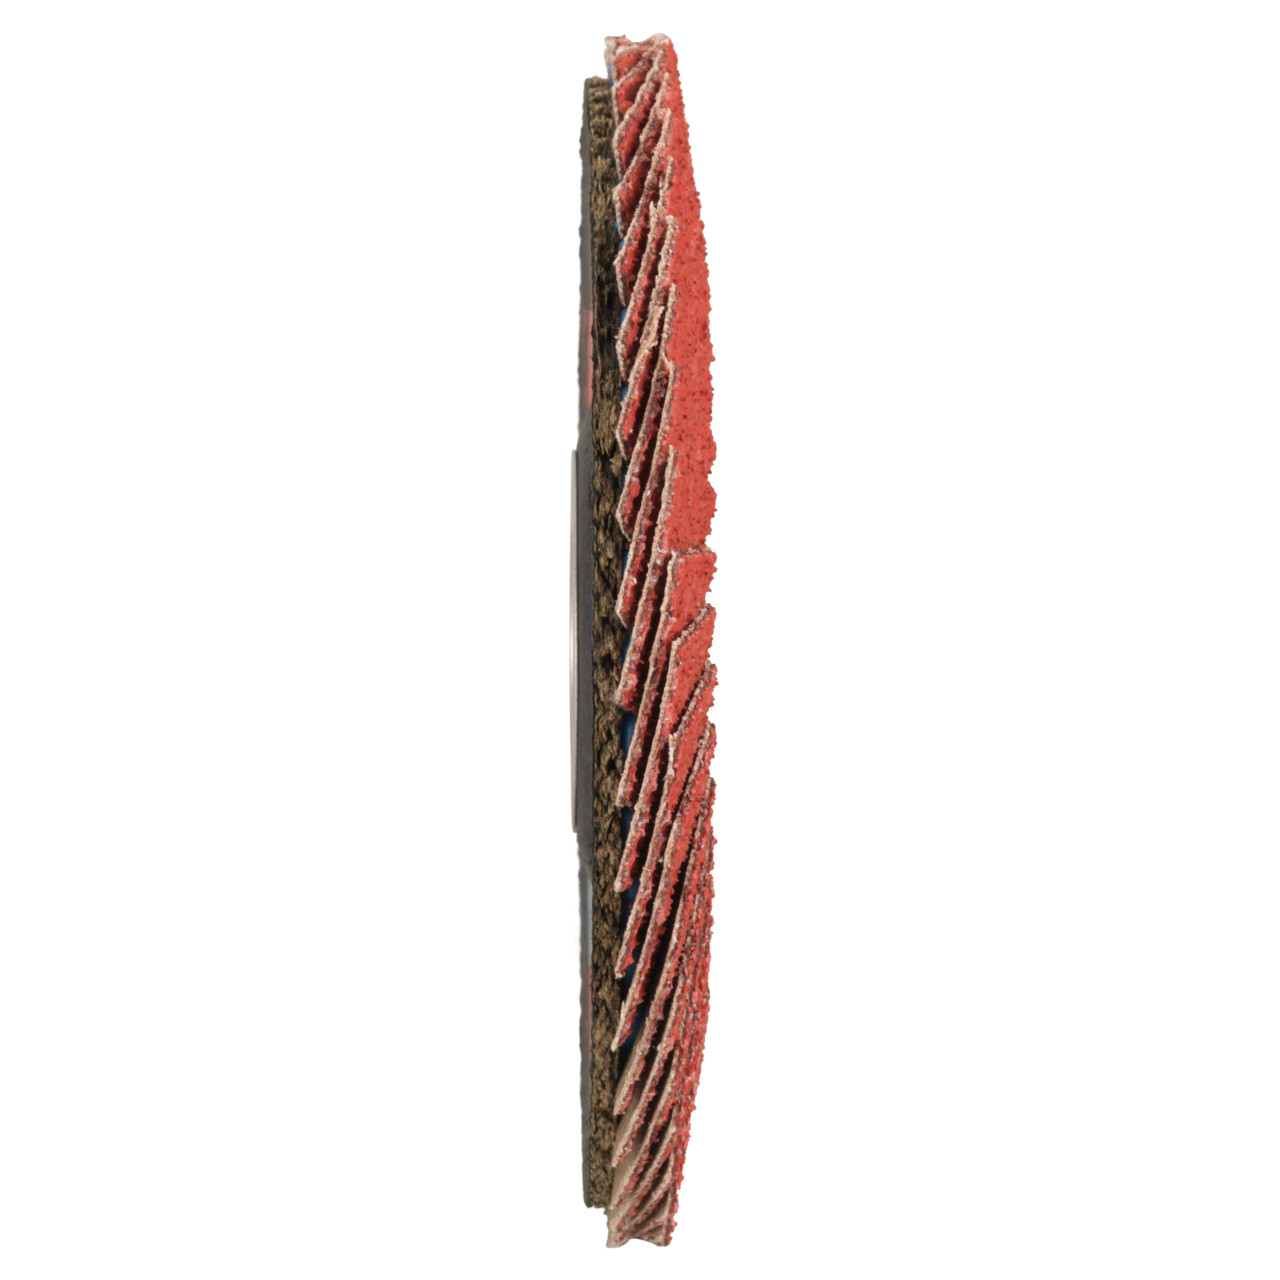 Tyrolit Arandela de seguridad dentada DxH 115x22,23 CERÁMICA para acero inoxidable, P60, forma: 28A - versión recta (versión con cuerpo de soporte de fibra de vidrio), Art. 719798